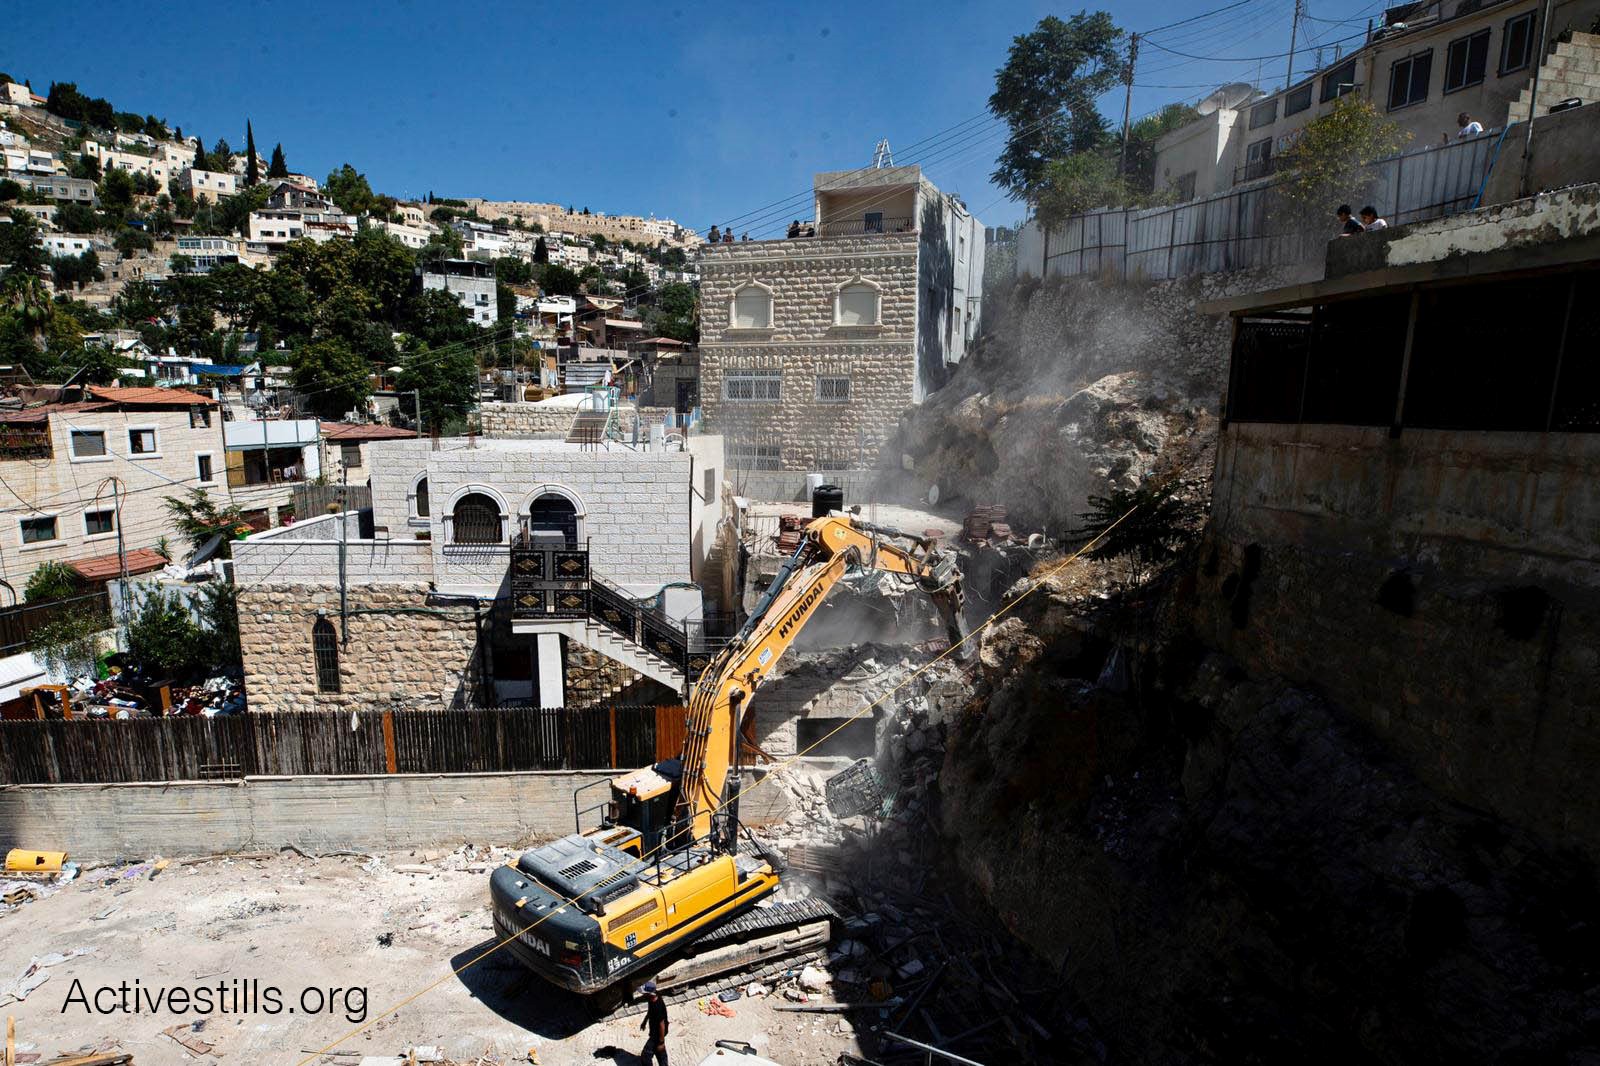 במהלך אוגוסט הכיבוש הרס 108 בתים פלסטינים והותיר 160 בני אדם ללא קורת גג